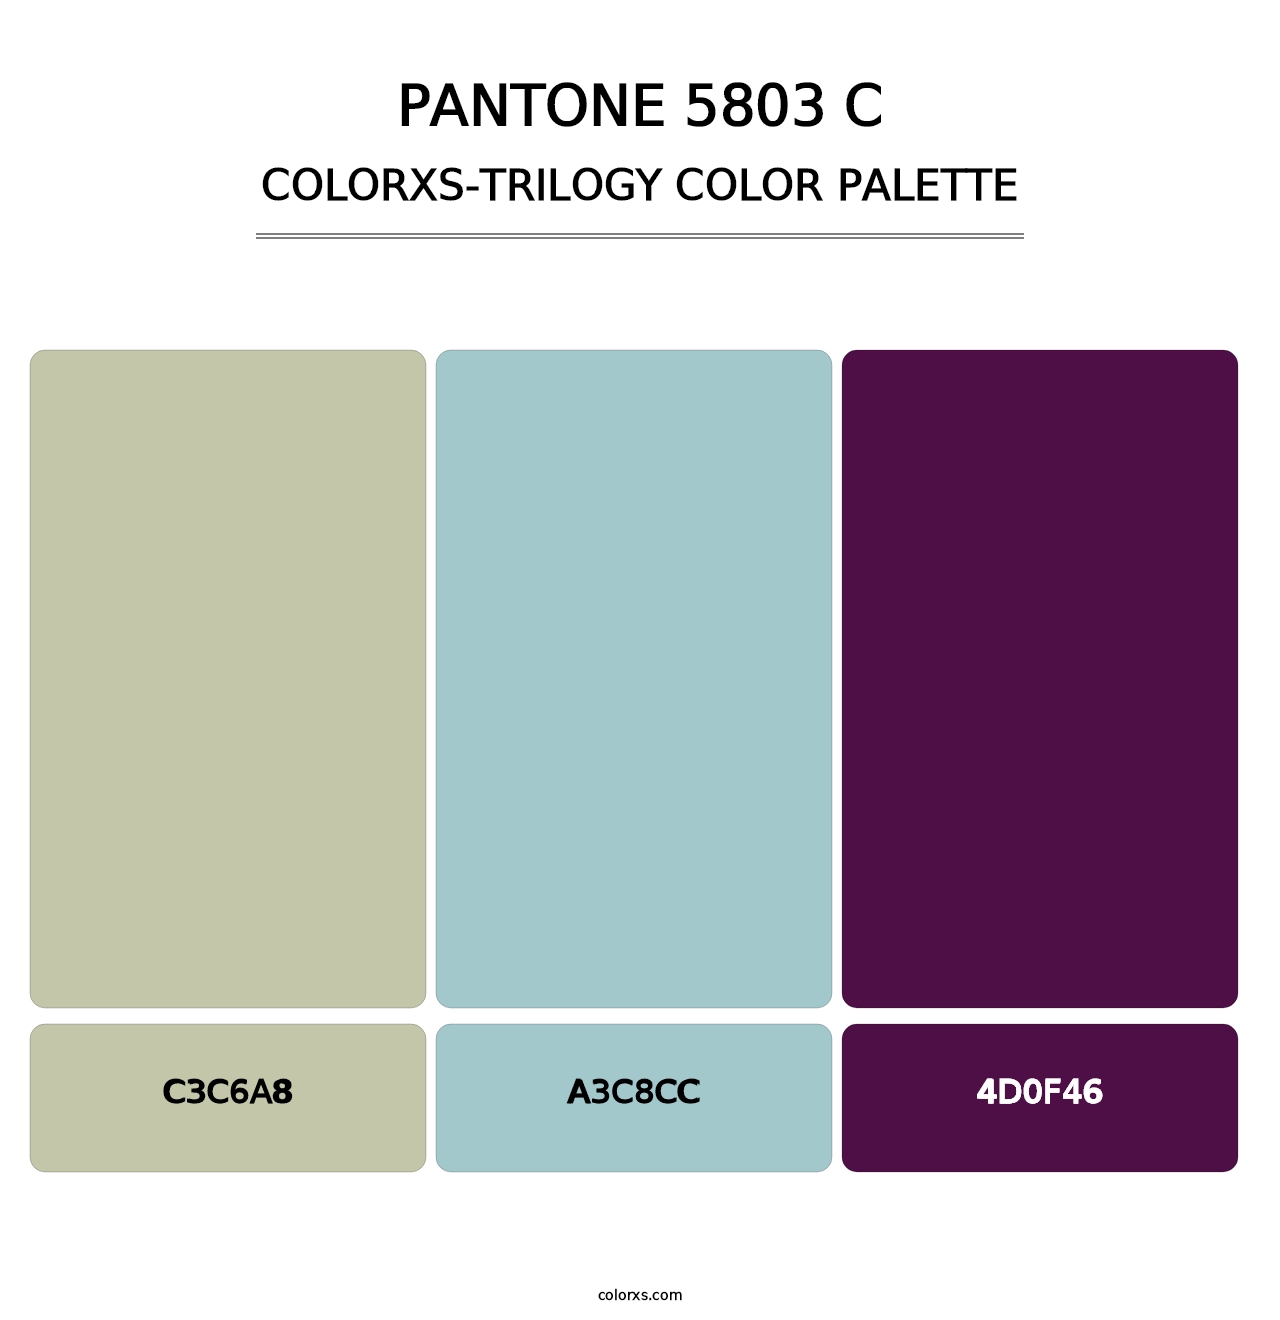 PANTONE 5803 C - Colorxs Trilogy Palette